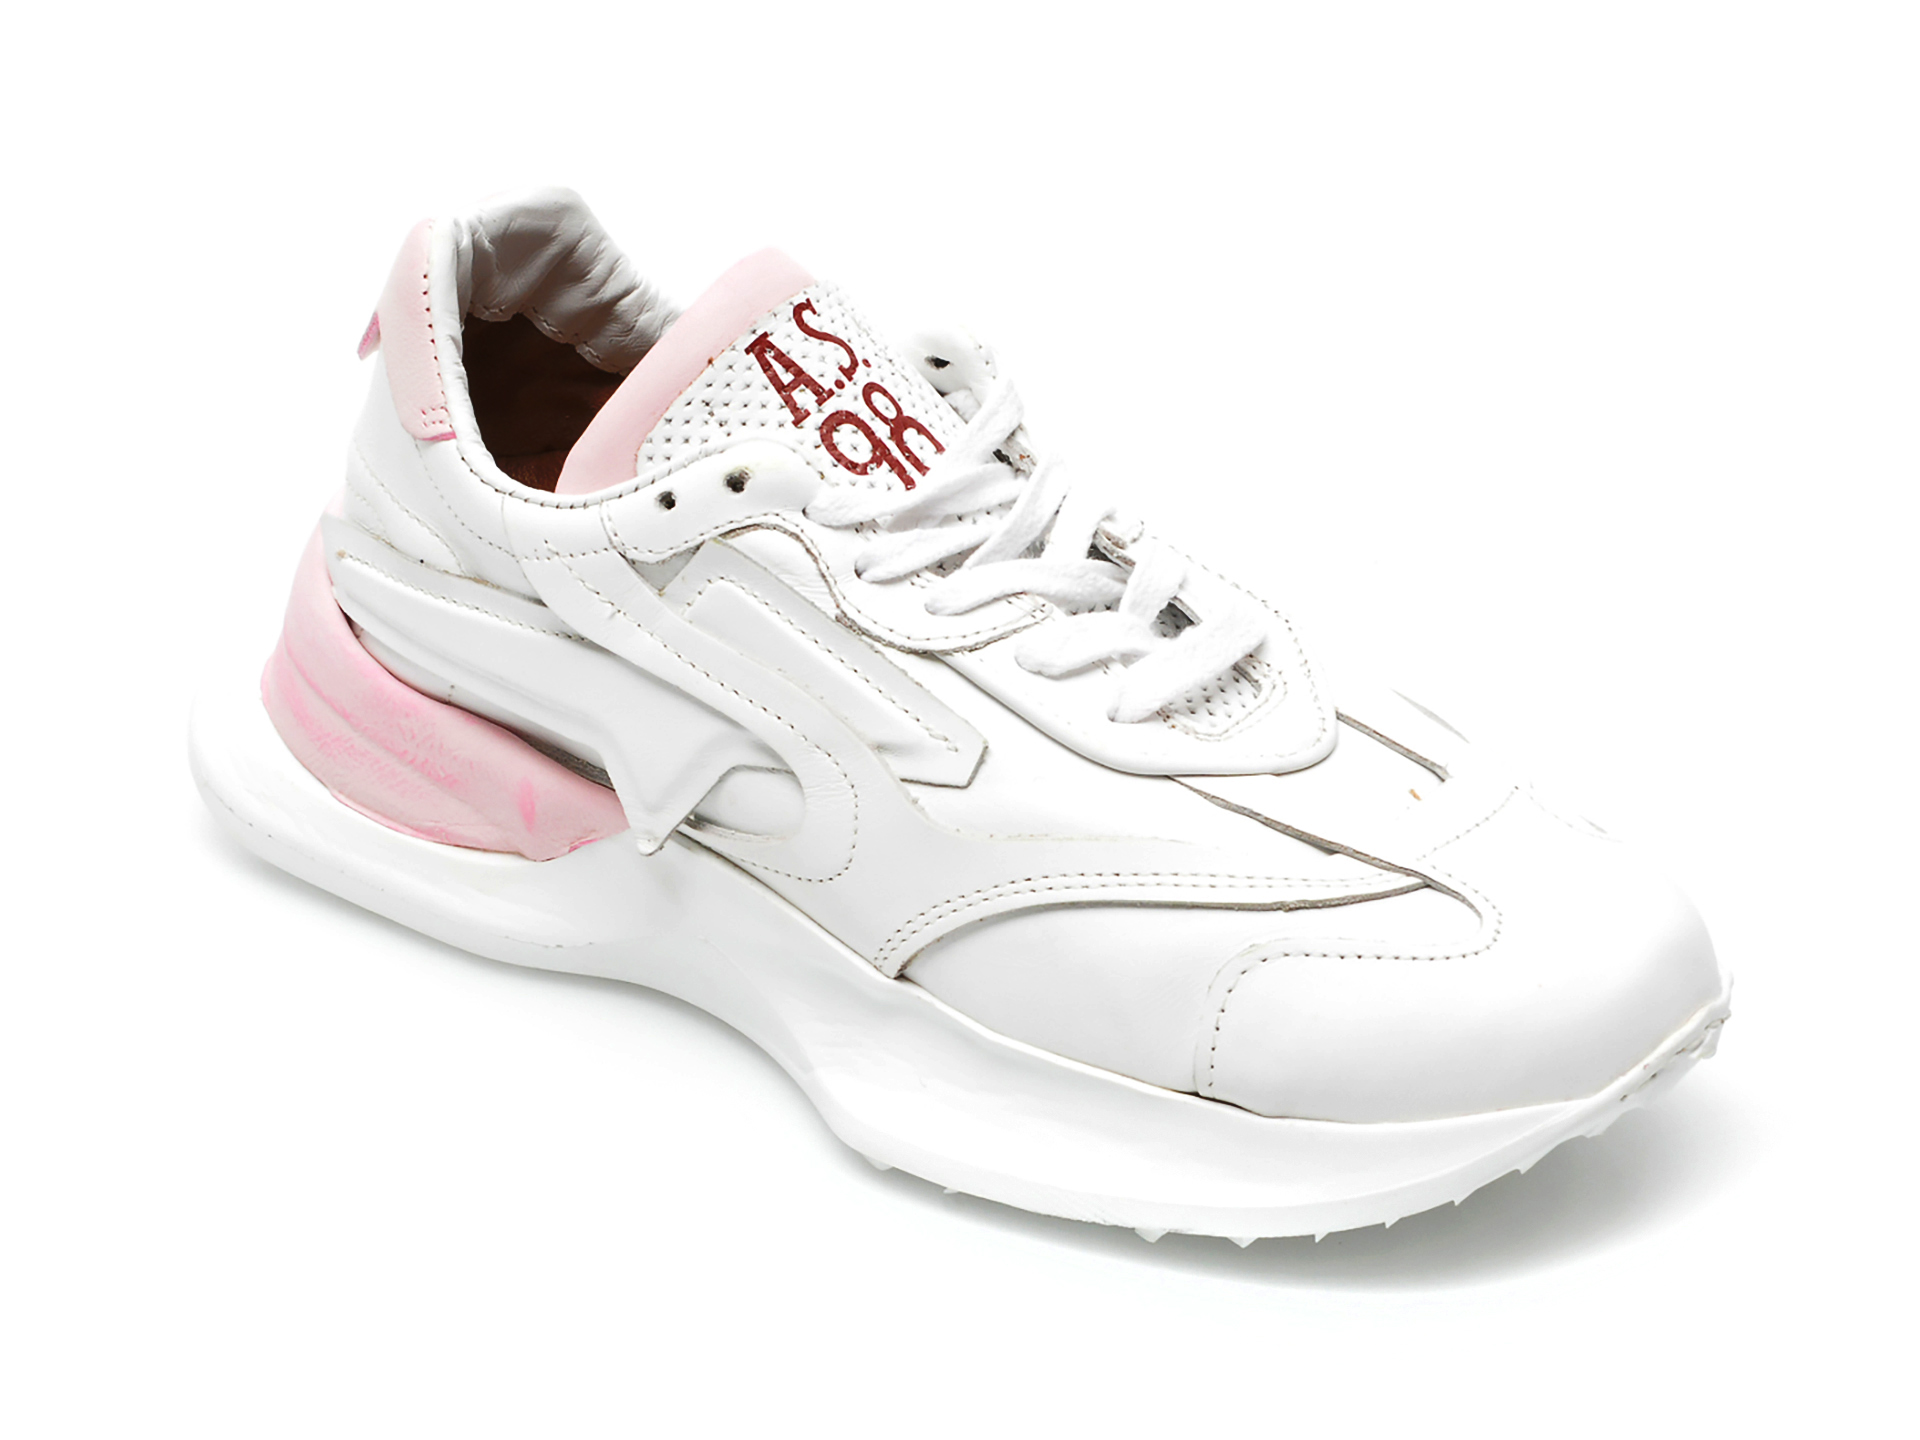 Pantofi sport A.S. 98 albi, A86101, din piele naturala 2022 ❤️ Pret Super tezyo.ro imagine noua 2022